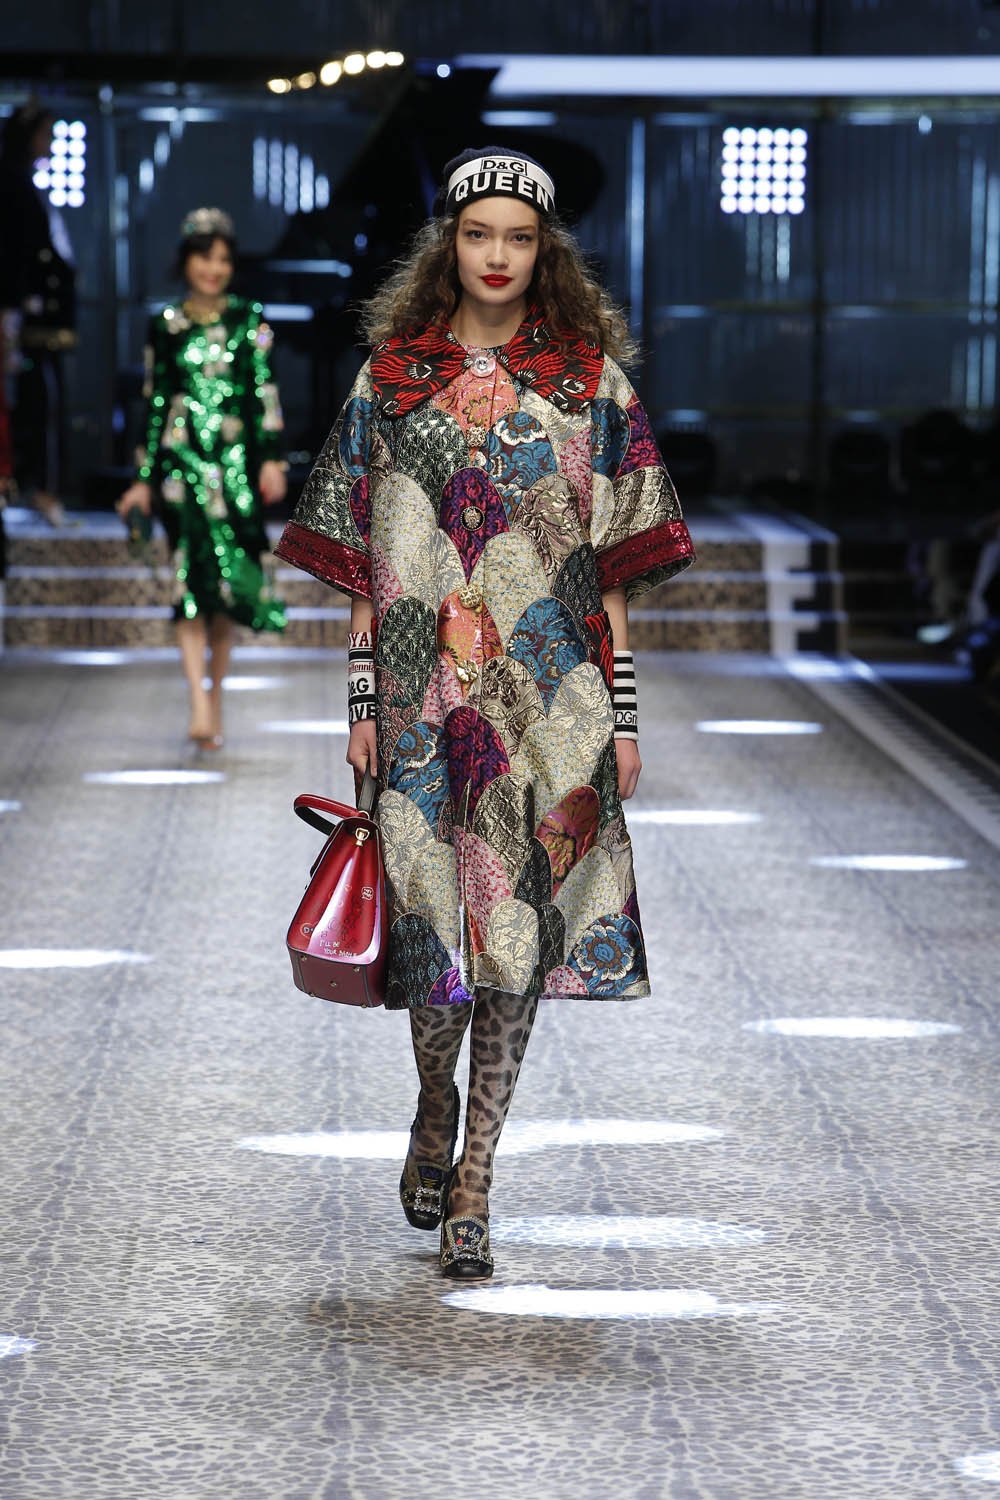 Dolce&Gabbana_women's fashion show fw17-18_Runway_images (12)